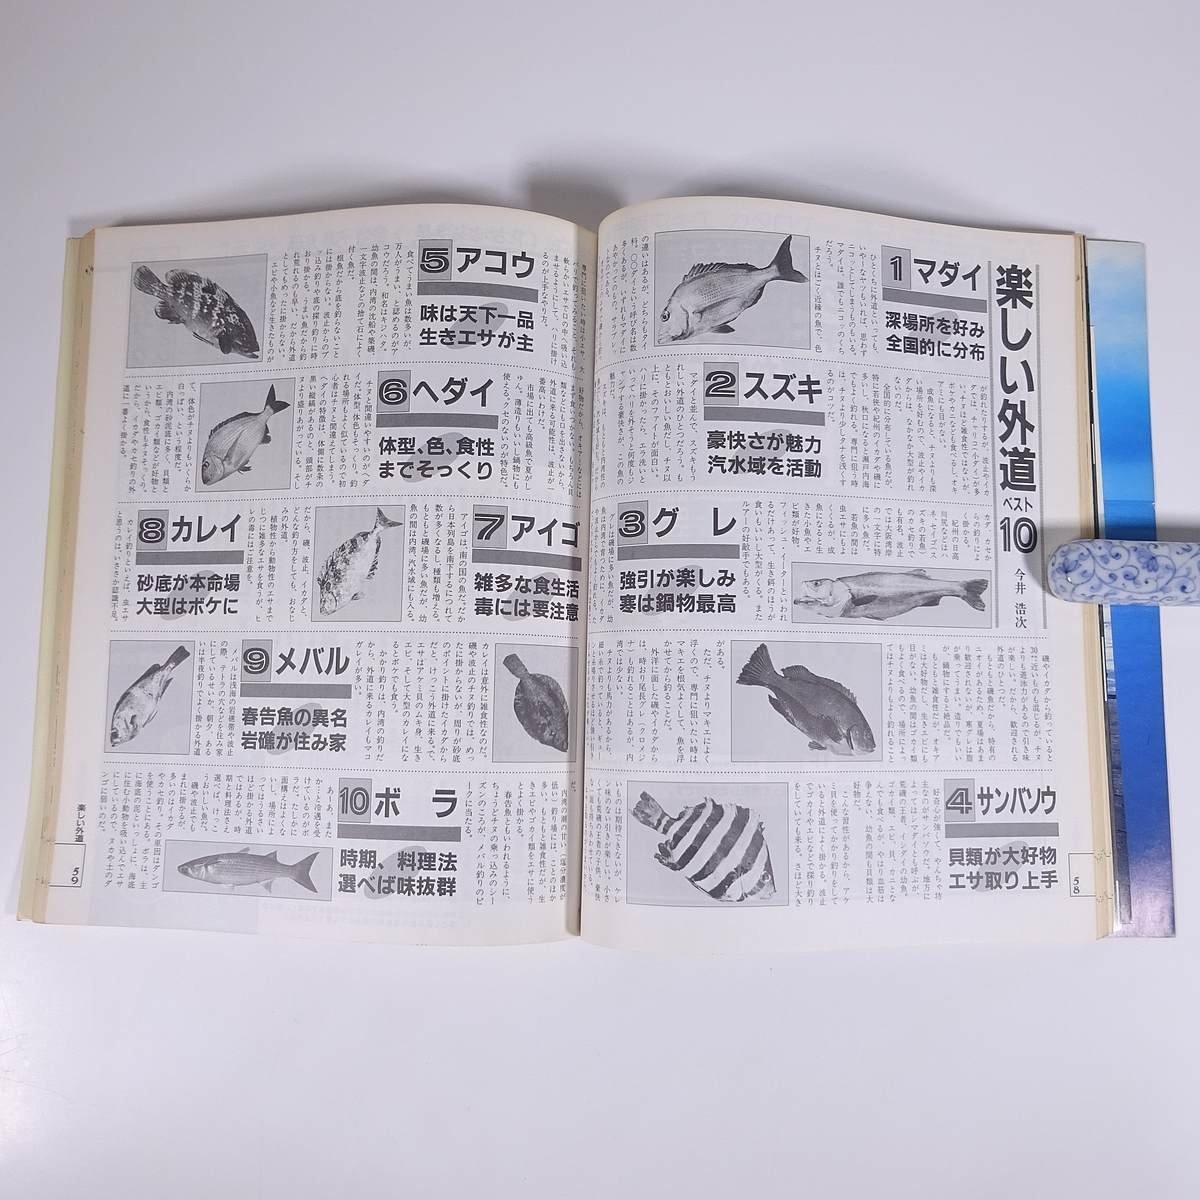 新 チヌ クロダイのすべて 新魚シリーズ1 週刊釣りサンデー別冊 1987 大型本 つり 釣り フィッシング_画像9